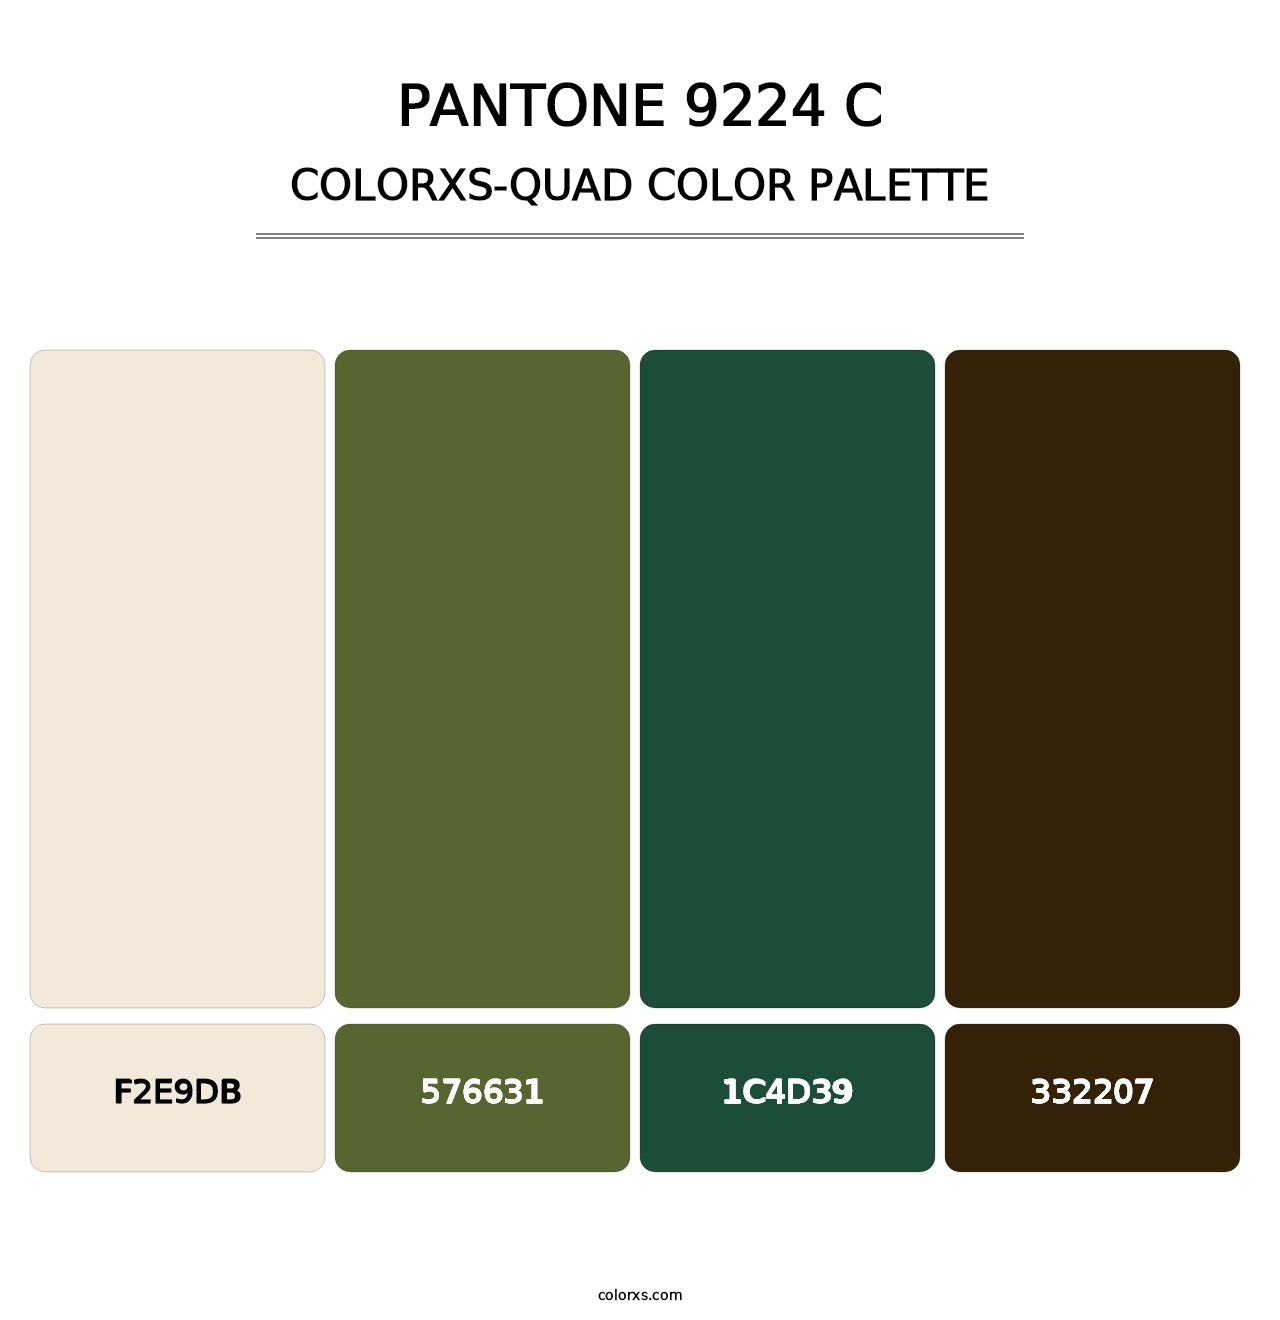 PANTONE 9224 C - Colorxs Quad Palette